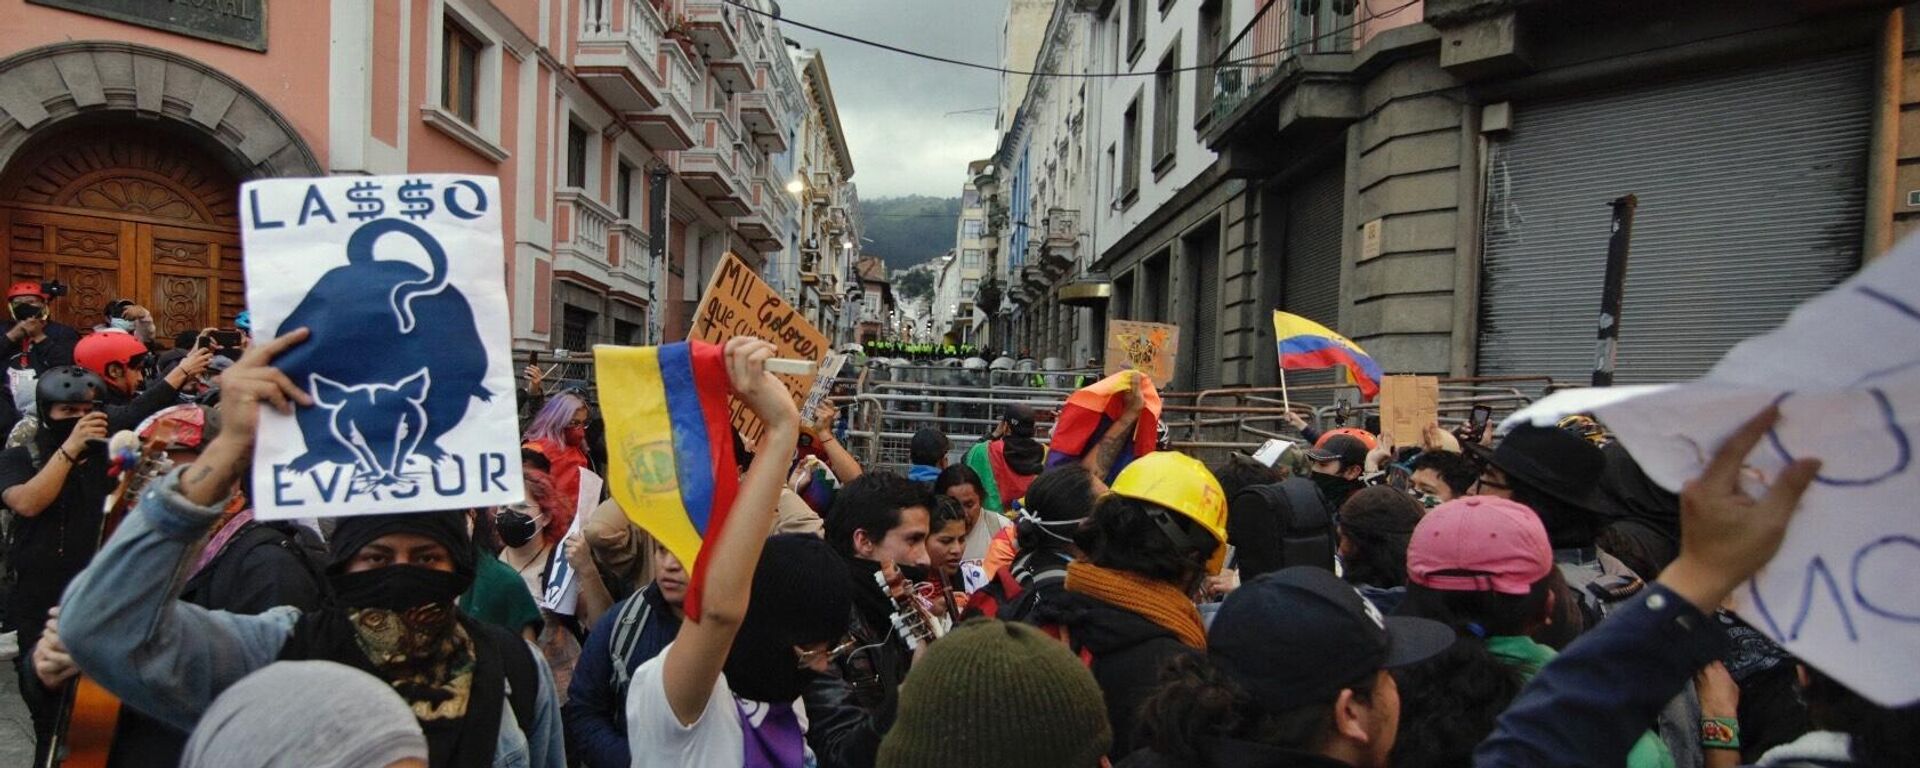 Las protestas en Ecuador contra el Gobierno de Guillermo Lasso - Sputnik Mundo, 1920, 27.06.2022